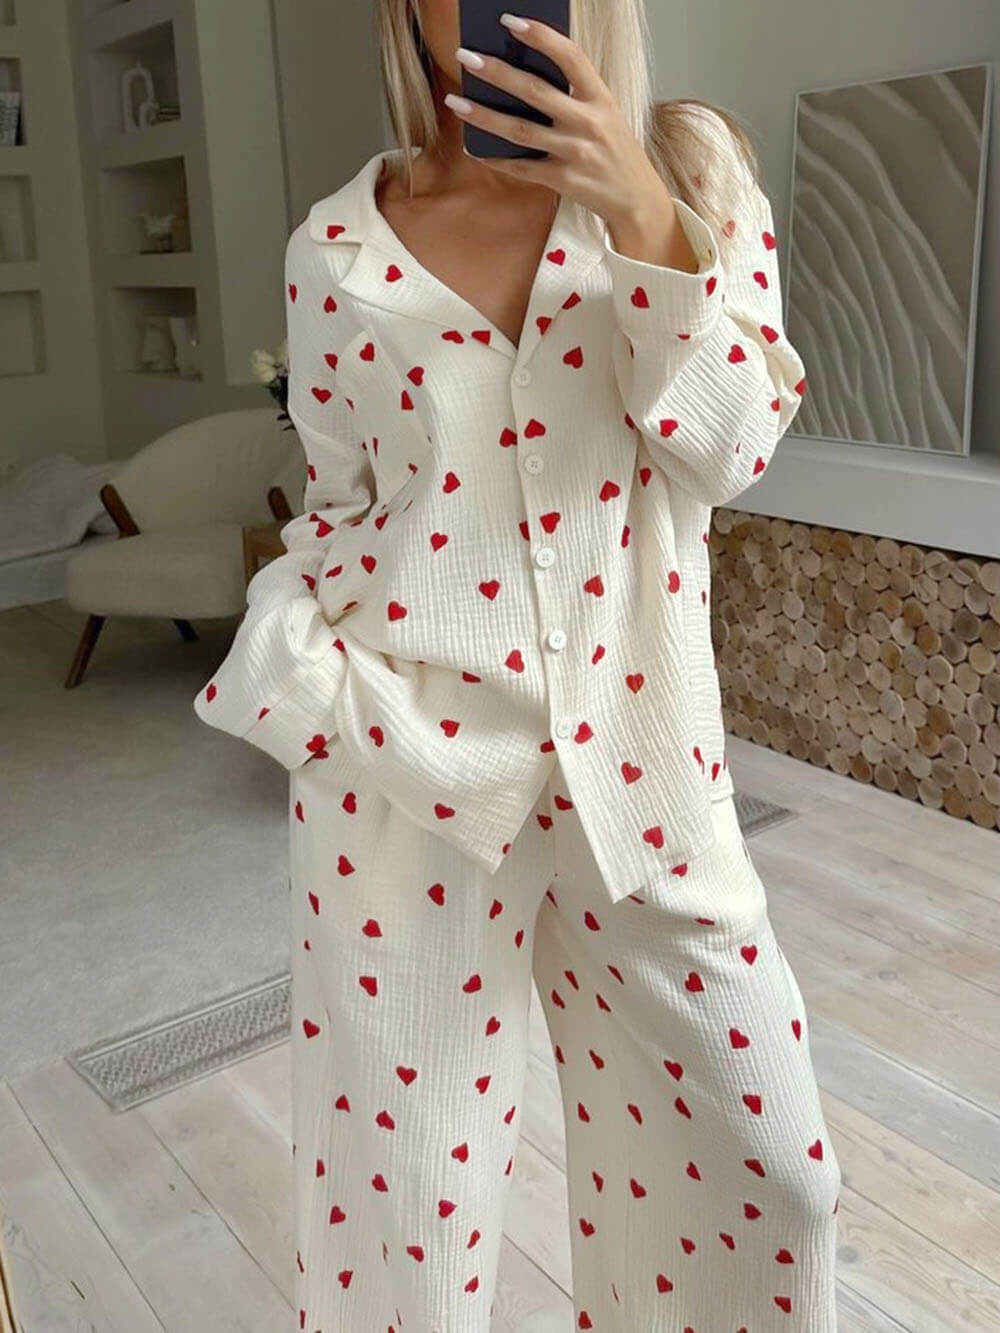 Conjuntos de pijama de camisa com estampa de coração fofo